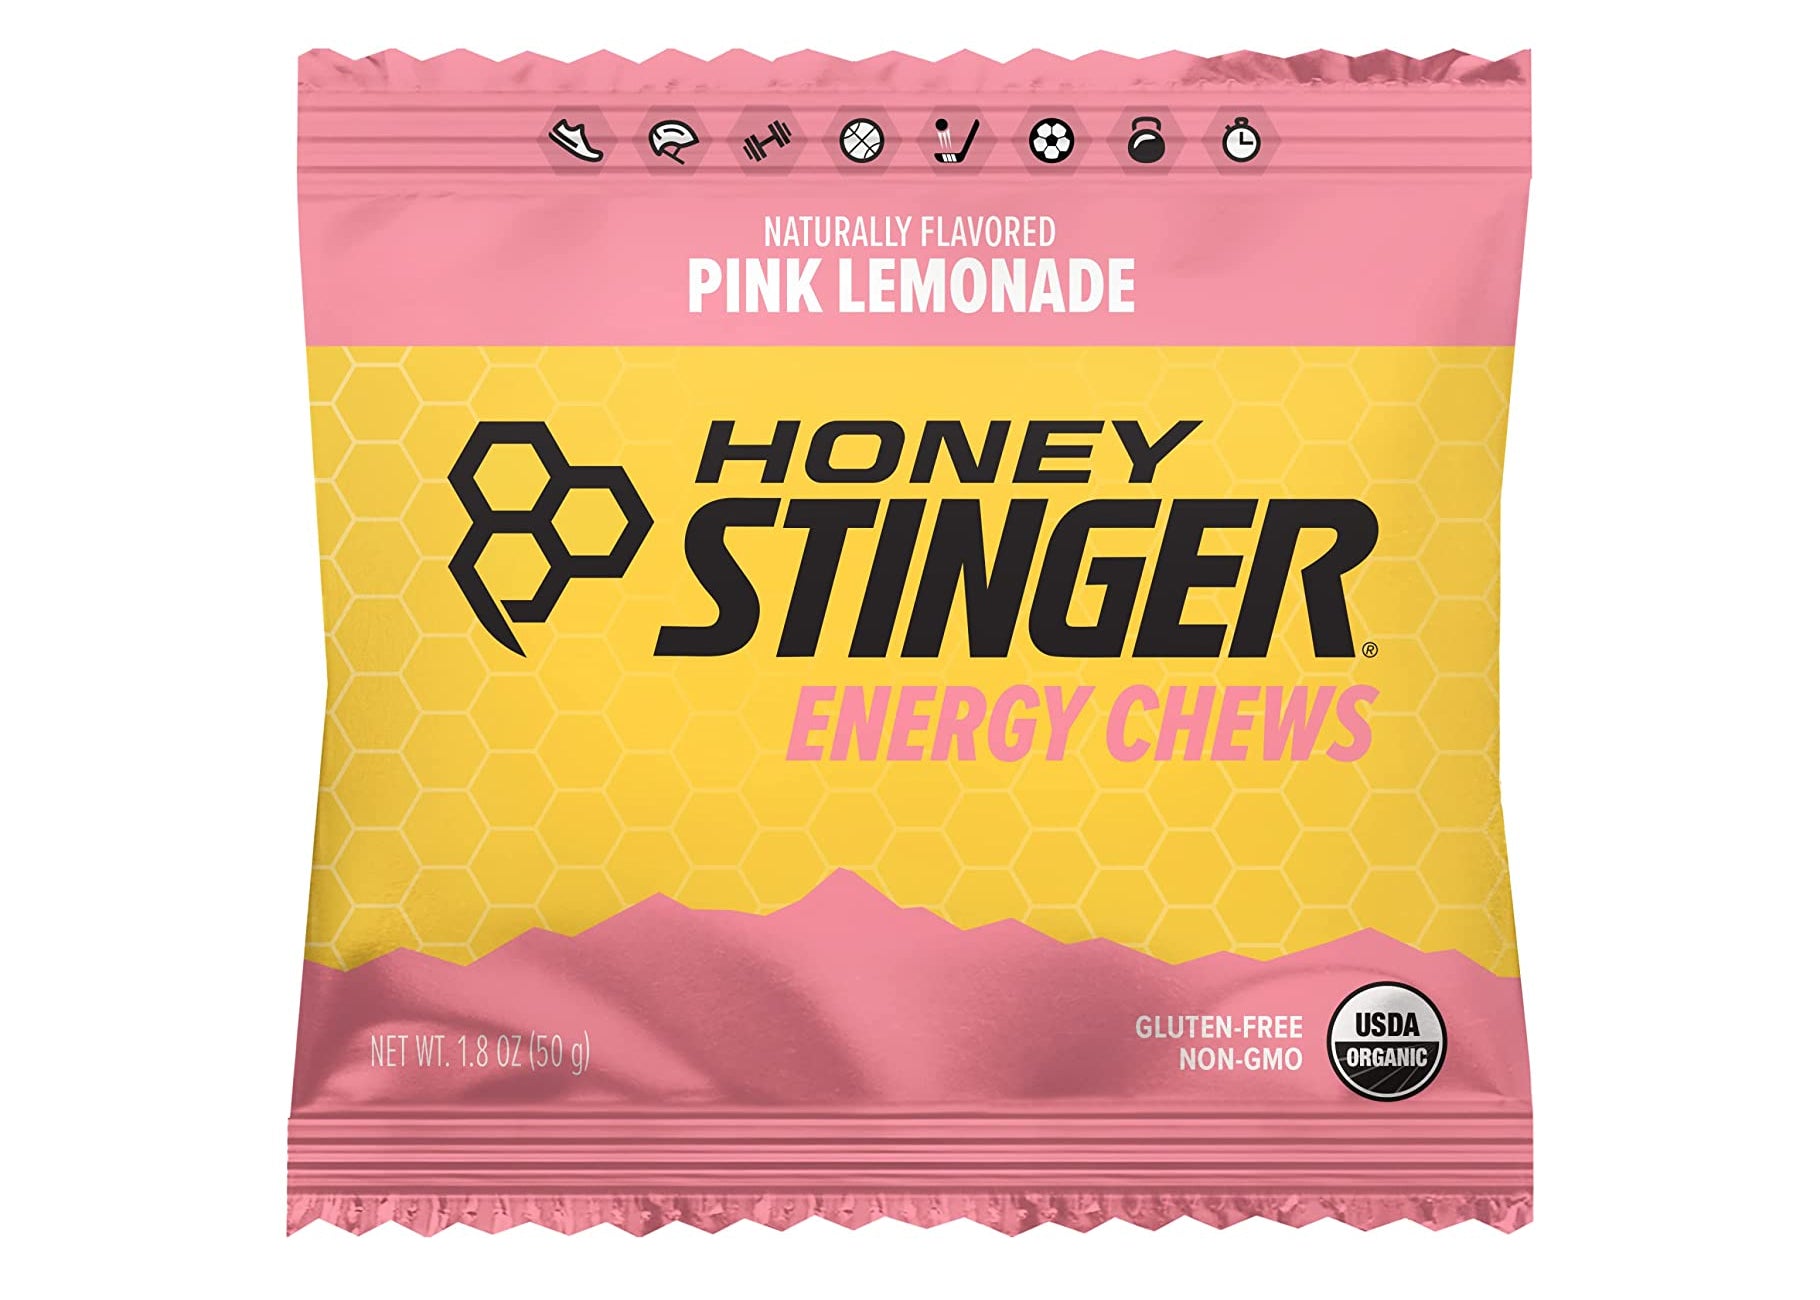 Honey Stringer Energy Chews - Idaho Mountain Touring